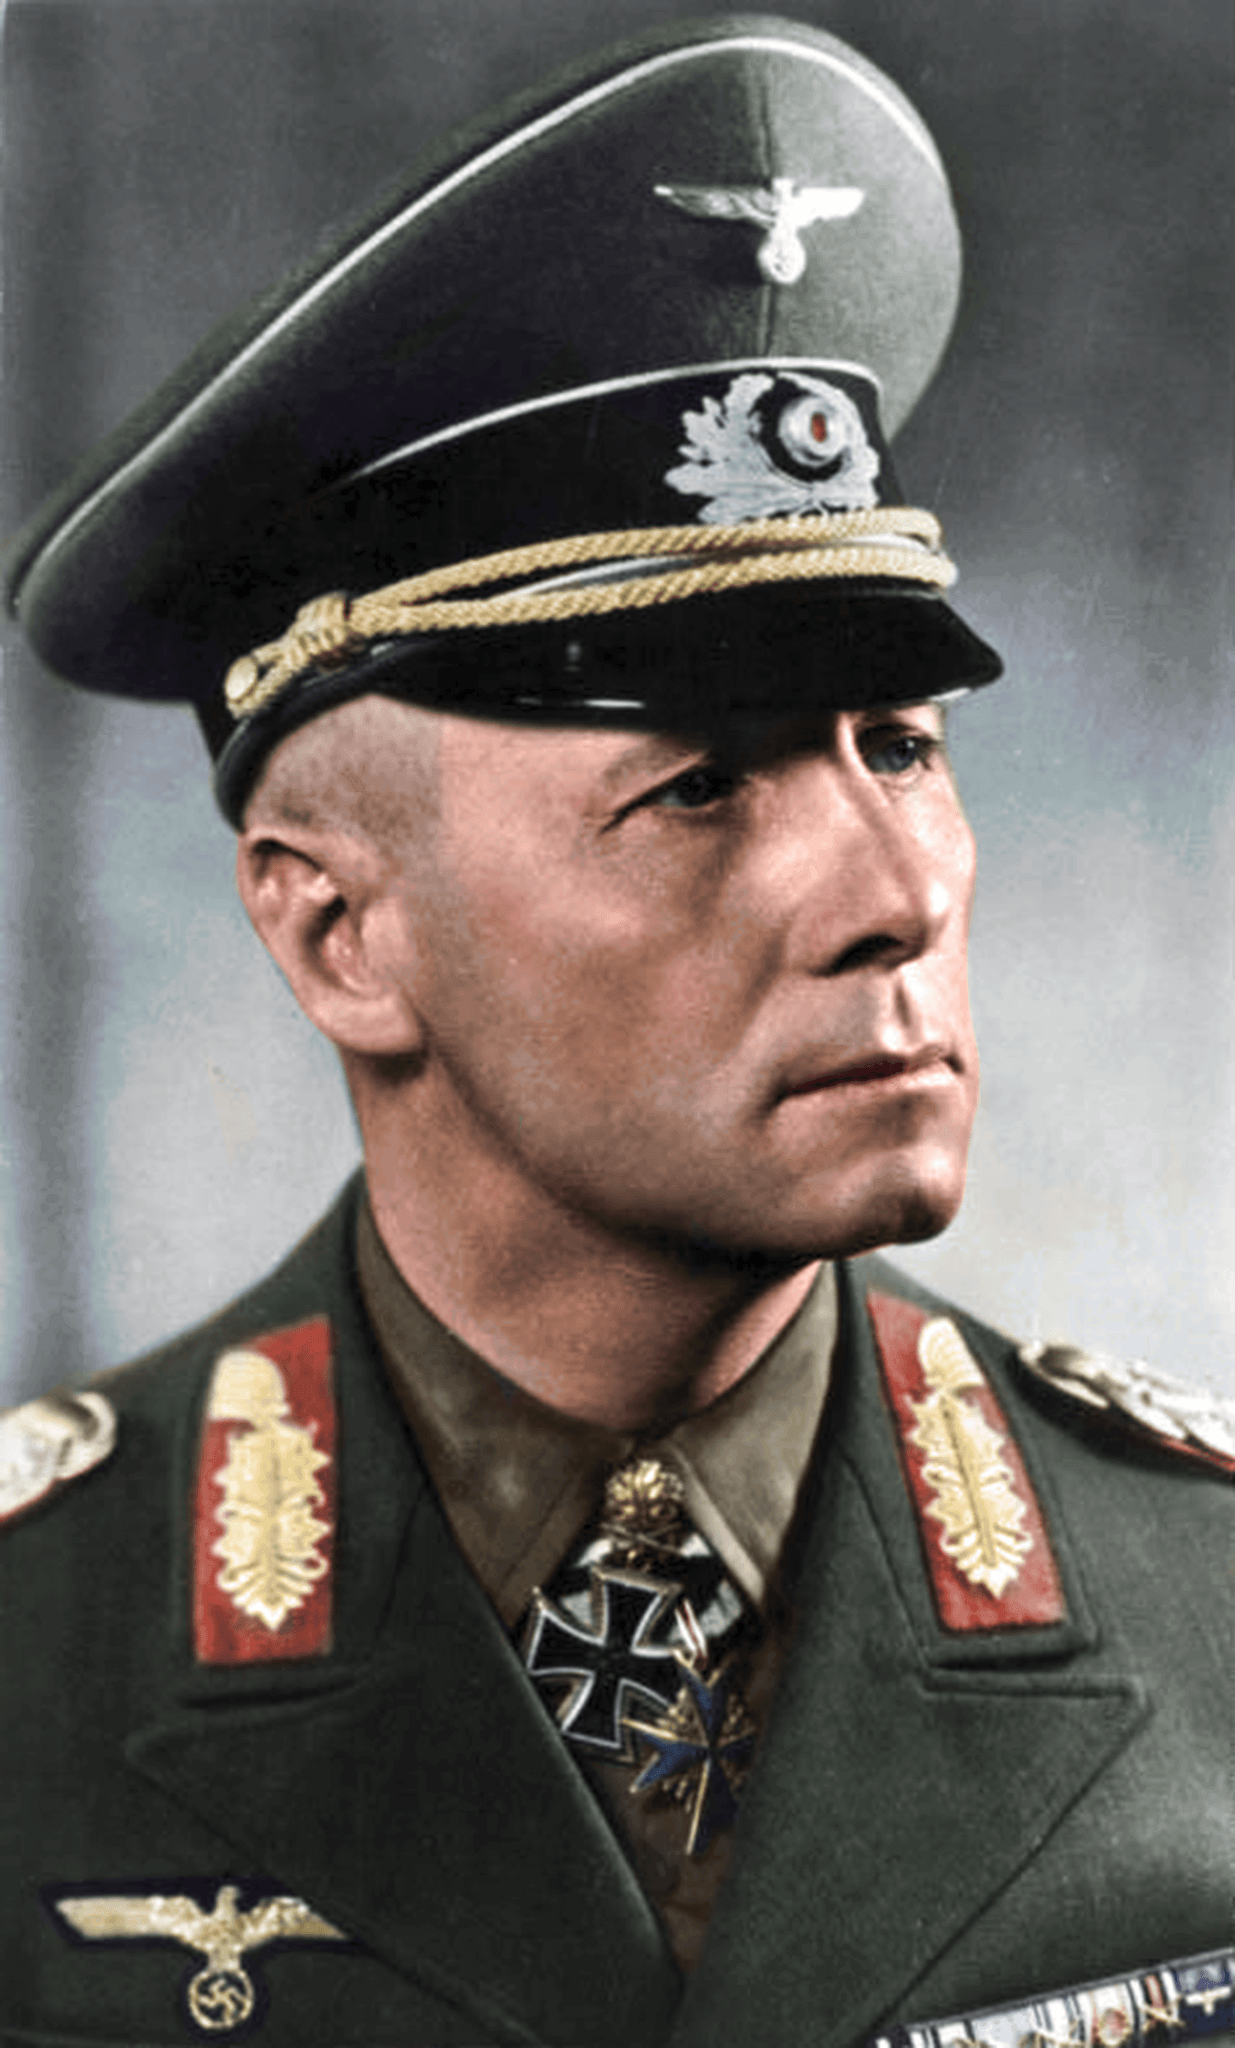 auteur Erwin Rommel de la citation Les messages ne peuvent pas être interceptés s'ils ne sont pas envoyés, n'est-ce pas?